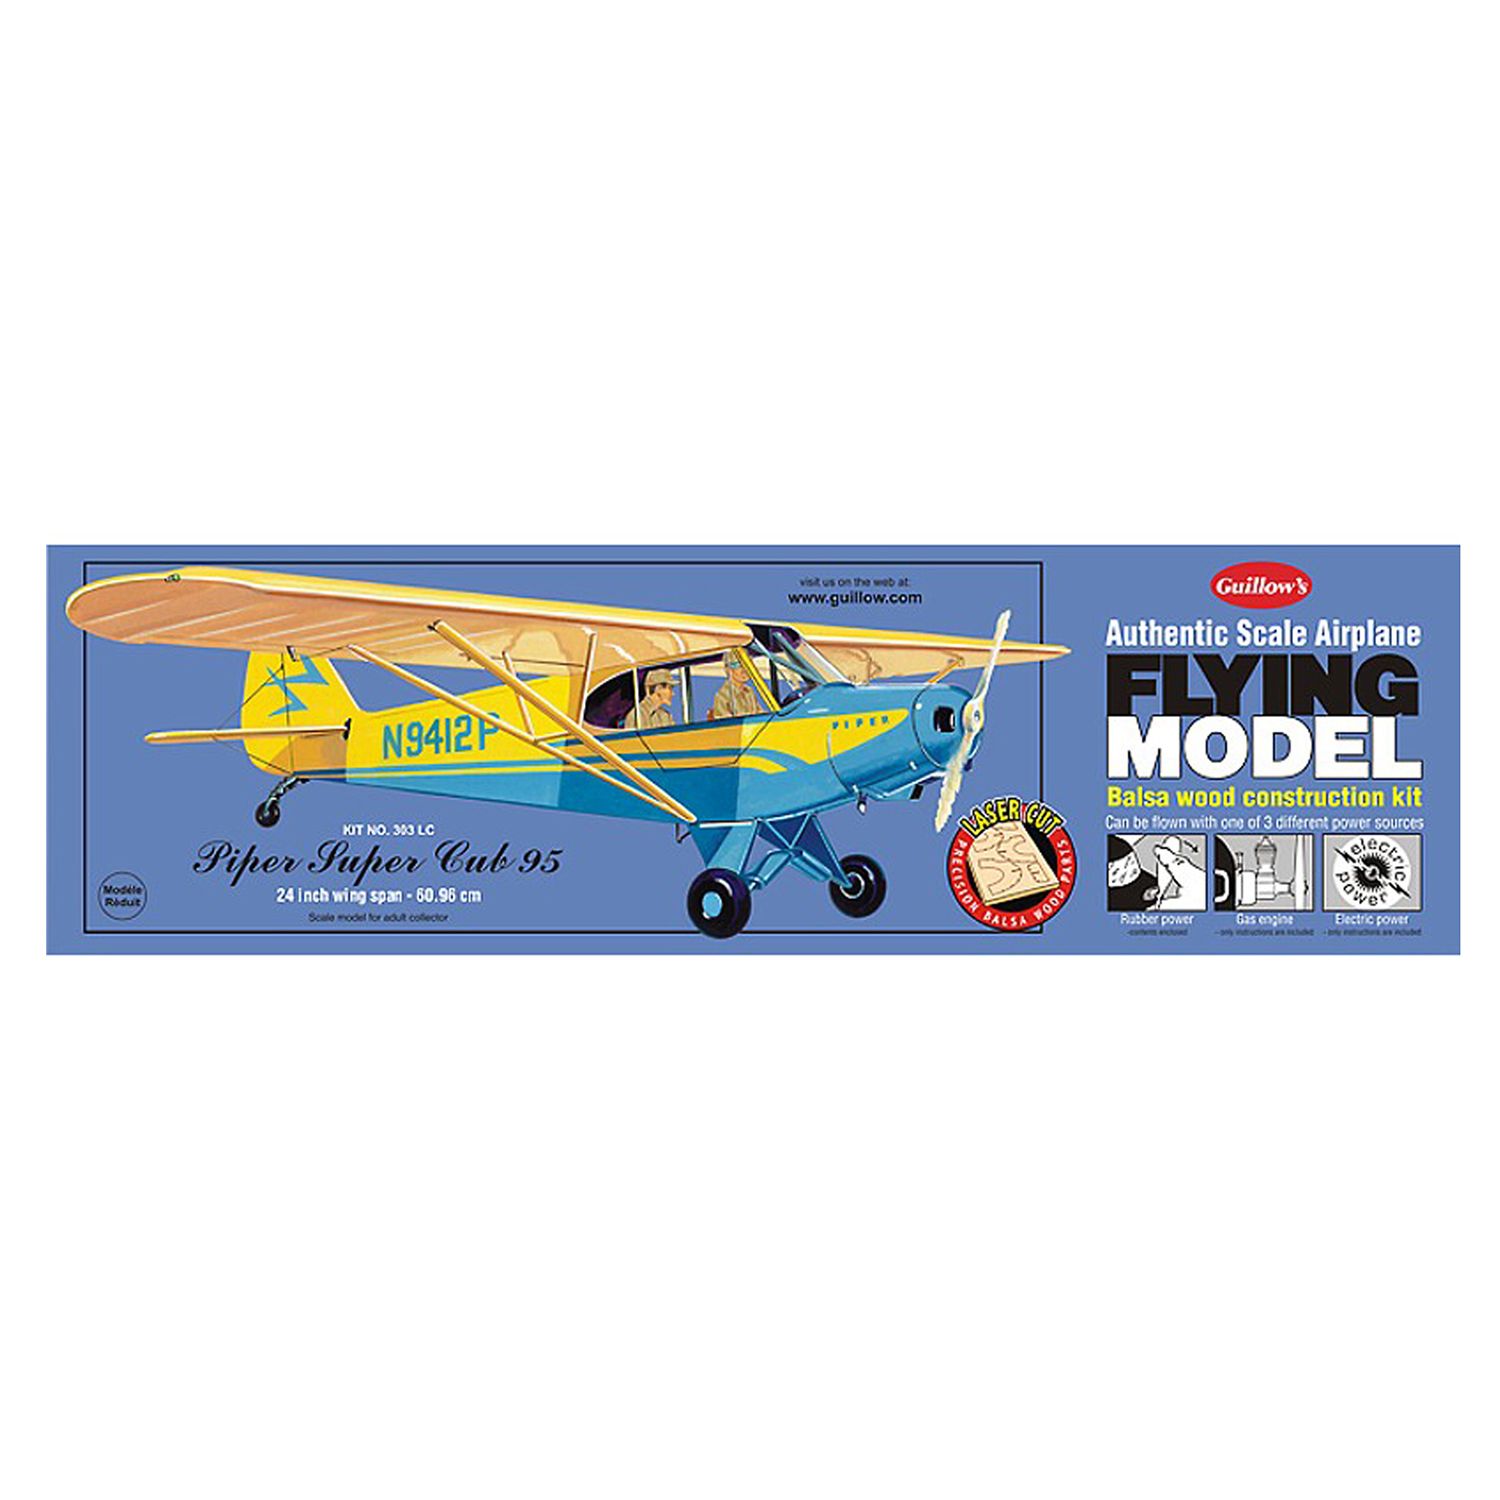 laser cut model aircraft kits